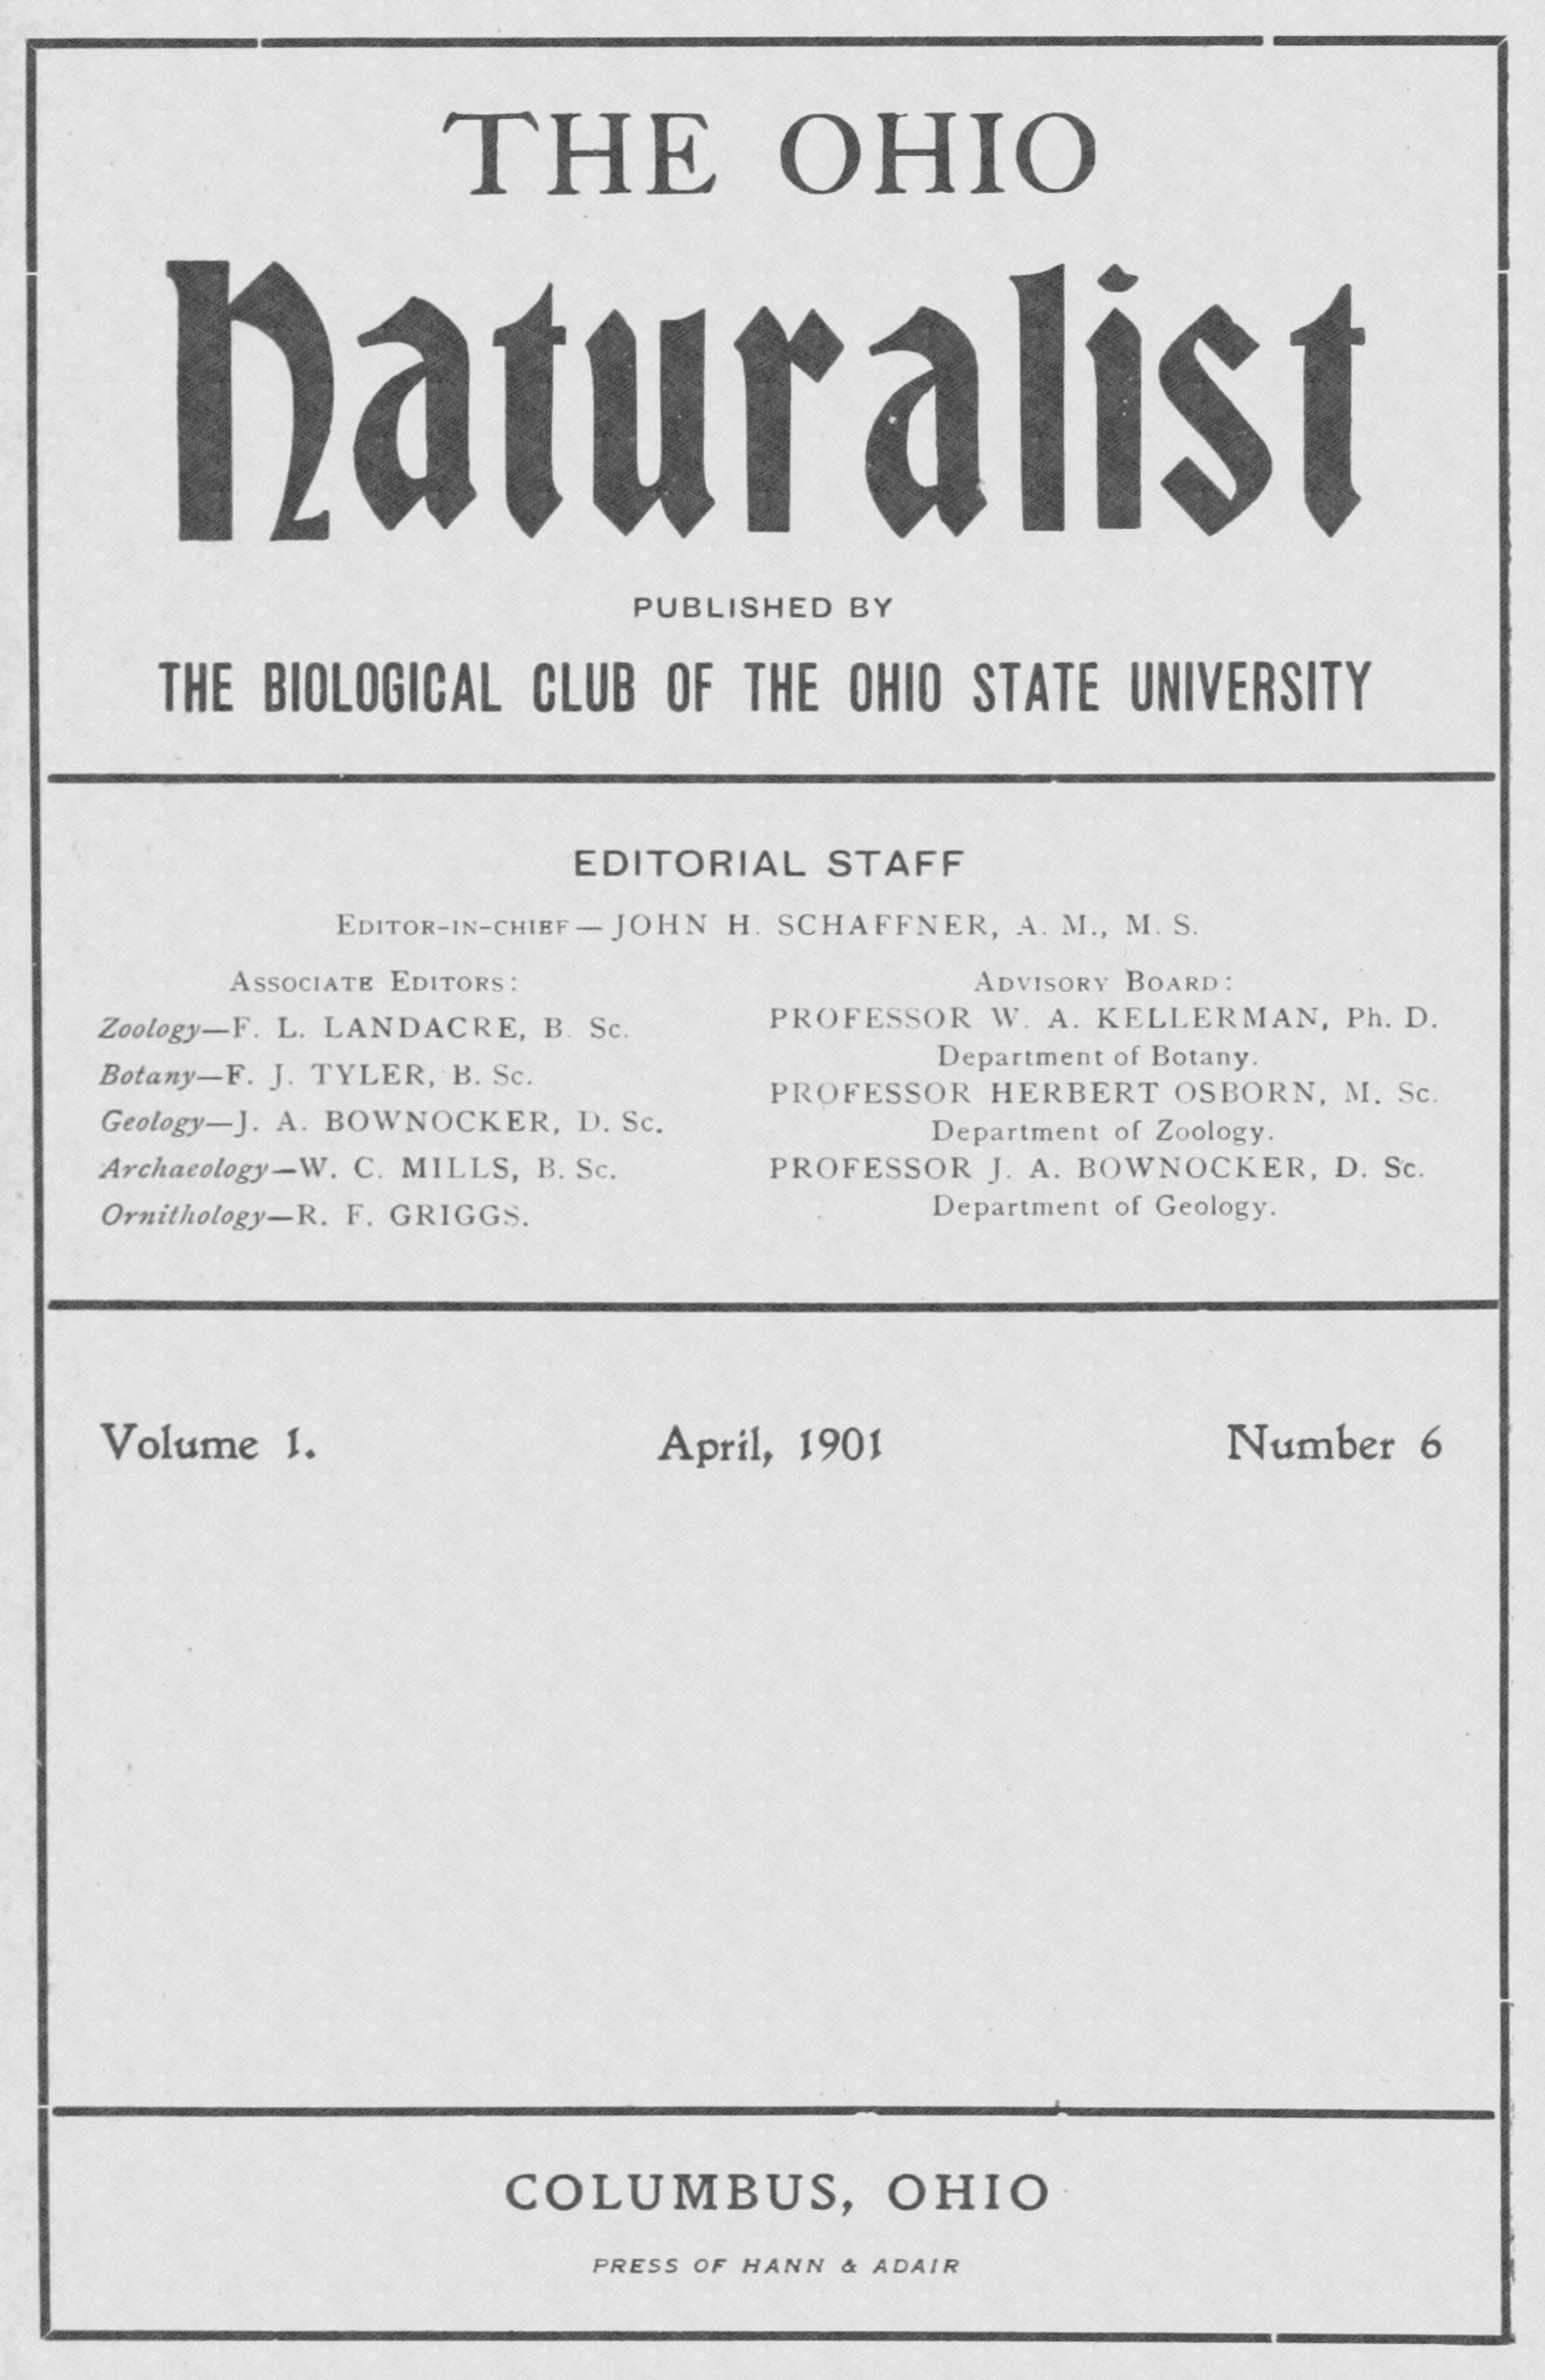 The Ohio naturalist, Vol. I, No. 6, April, 1901